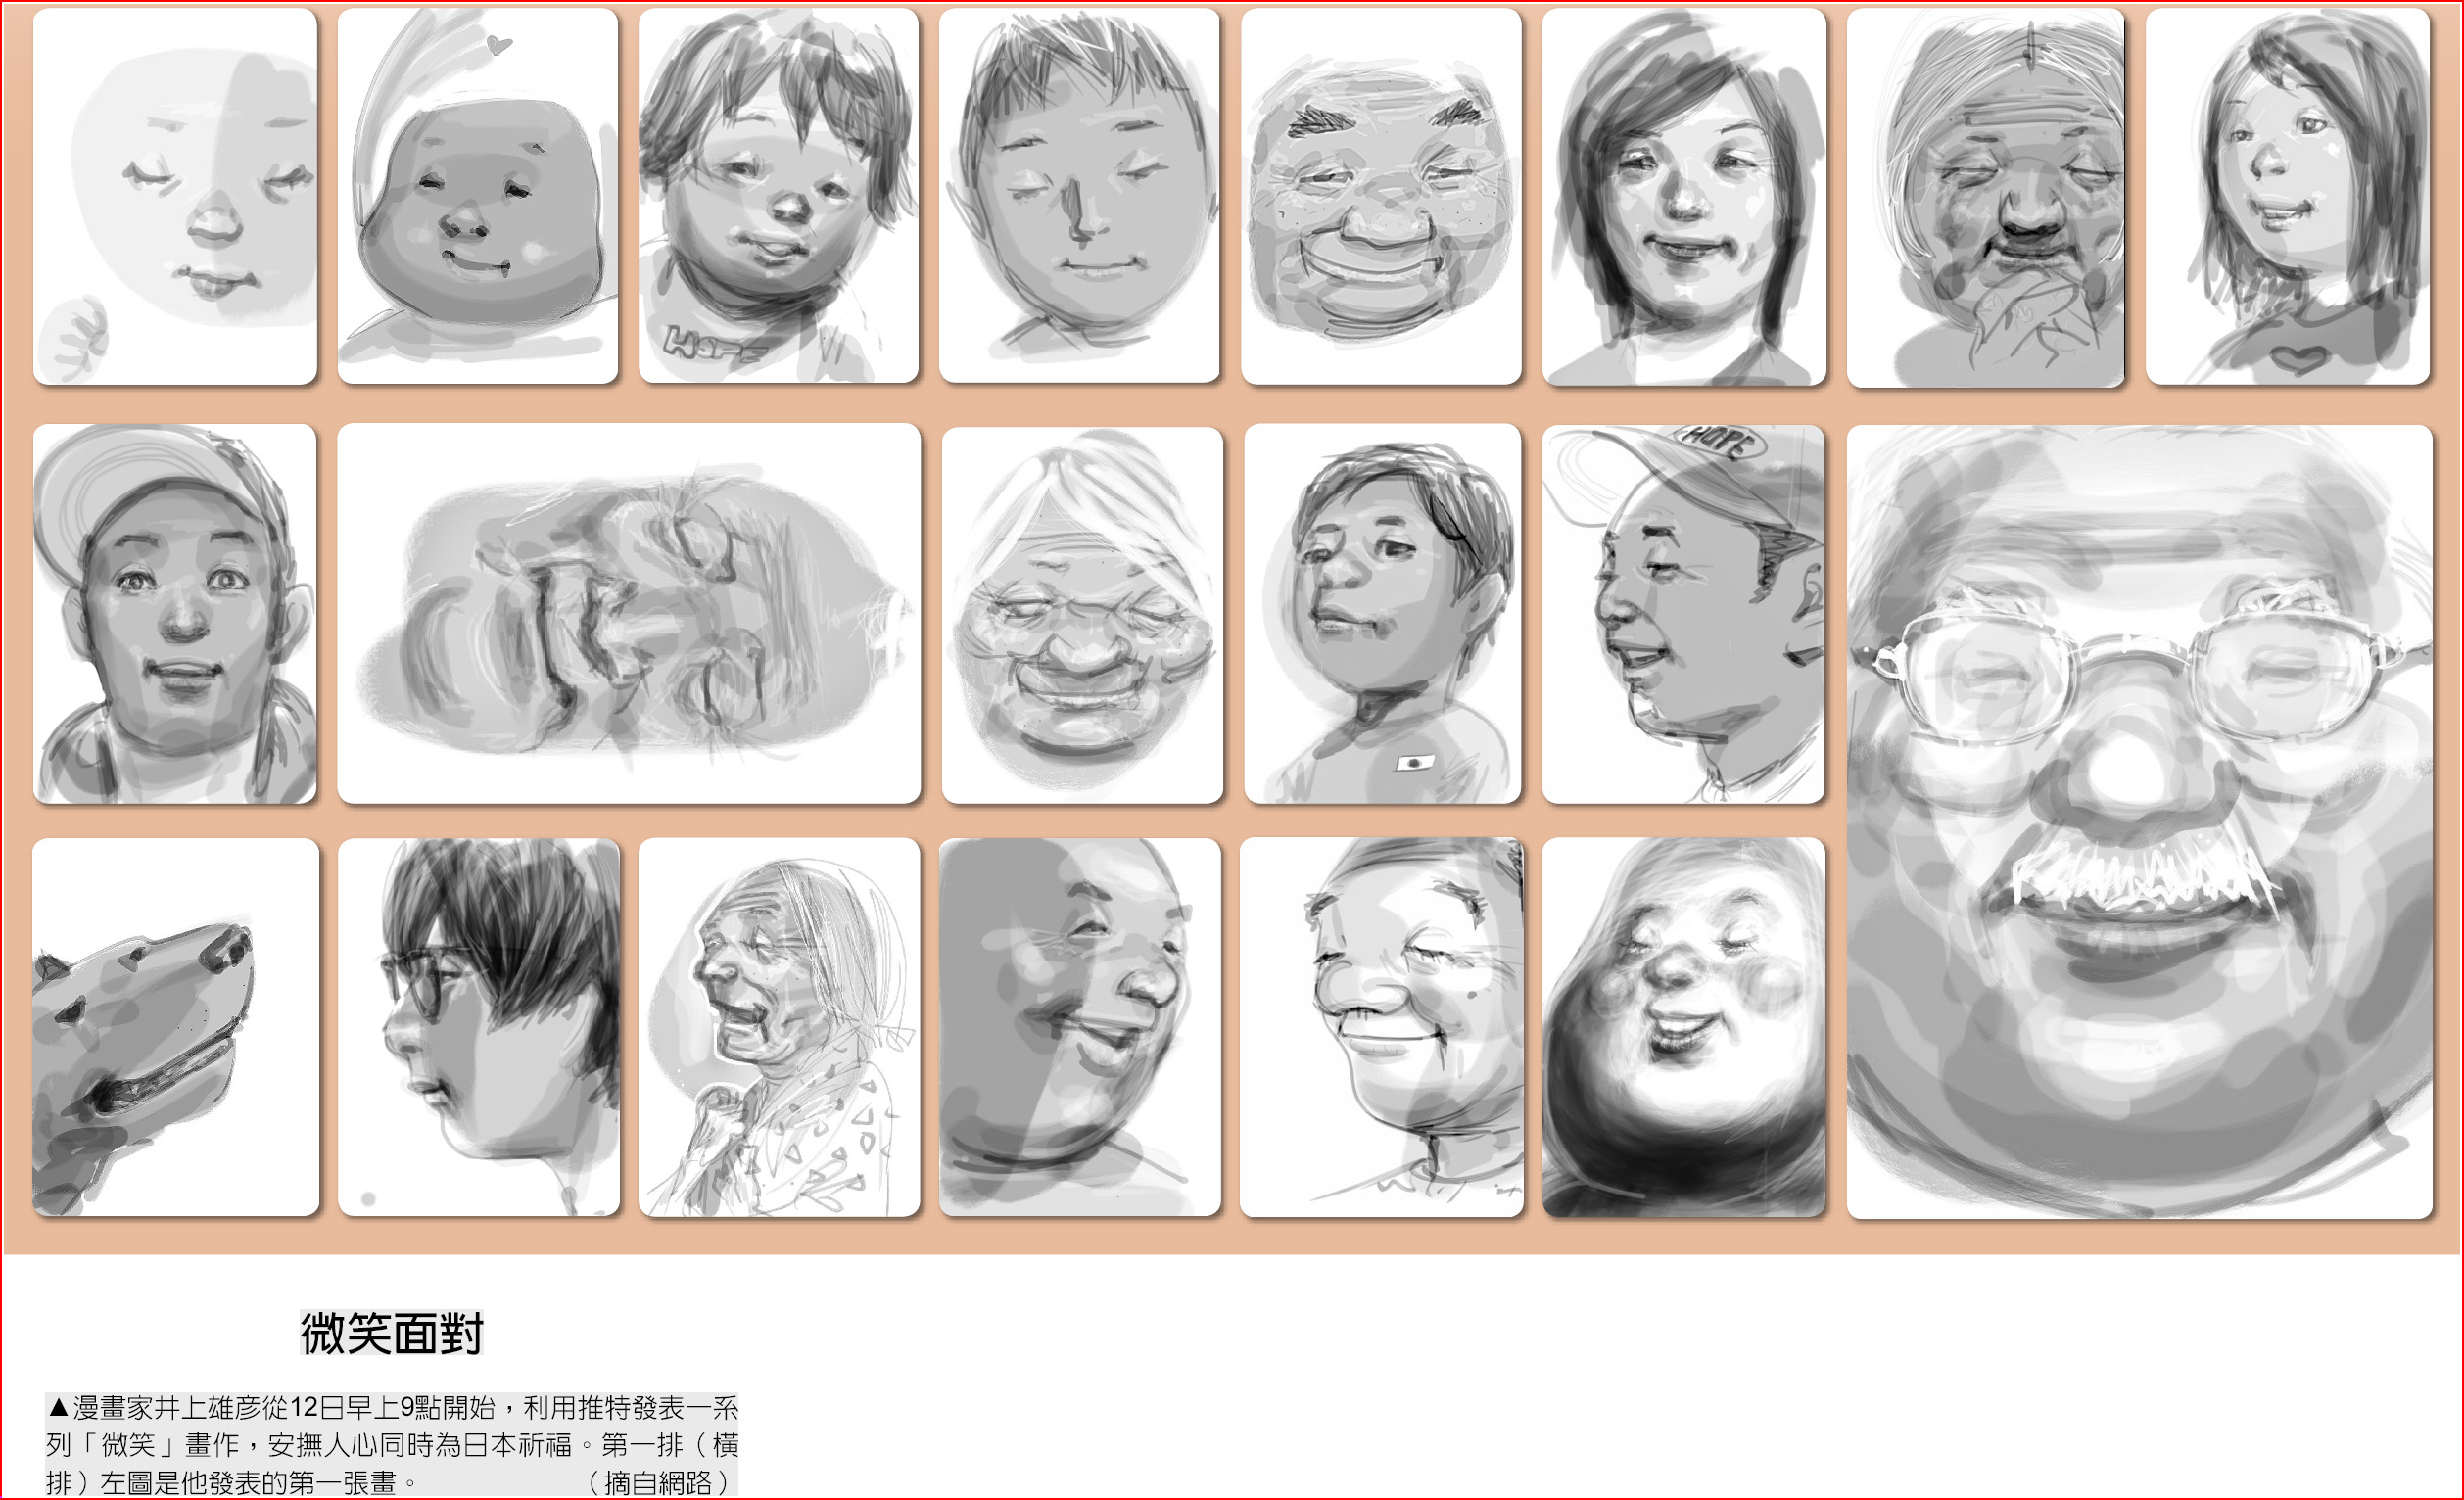 　微笑面對
　▲漫畫家井上雄彥從12日早上9點開始，利用推特發表一系列「微笑」畫作，安撫人心同時為日本祈福。第一排（橫排）左圖是他發表的第一張畫。（摘自網路）